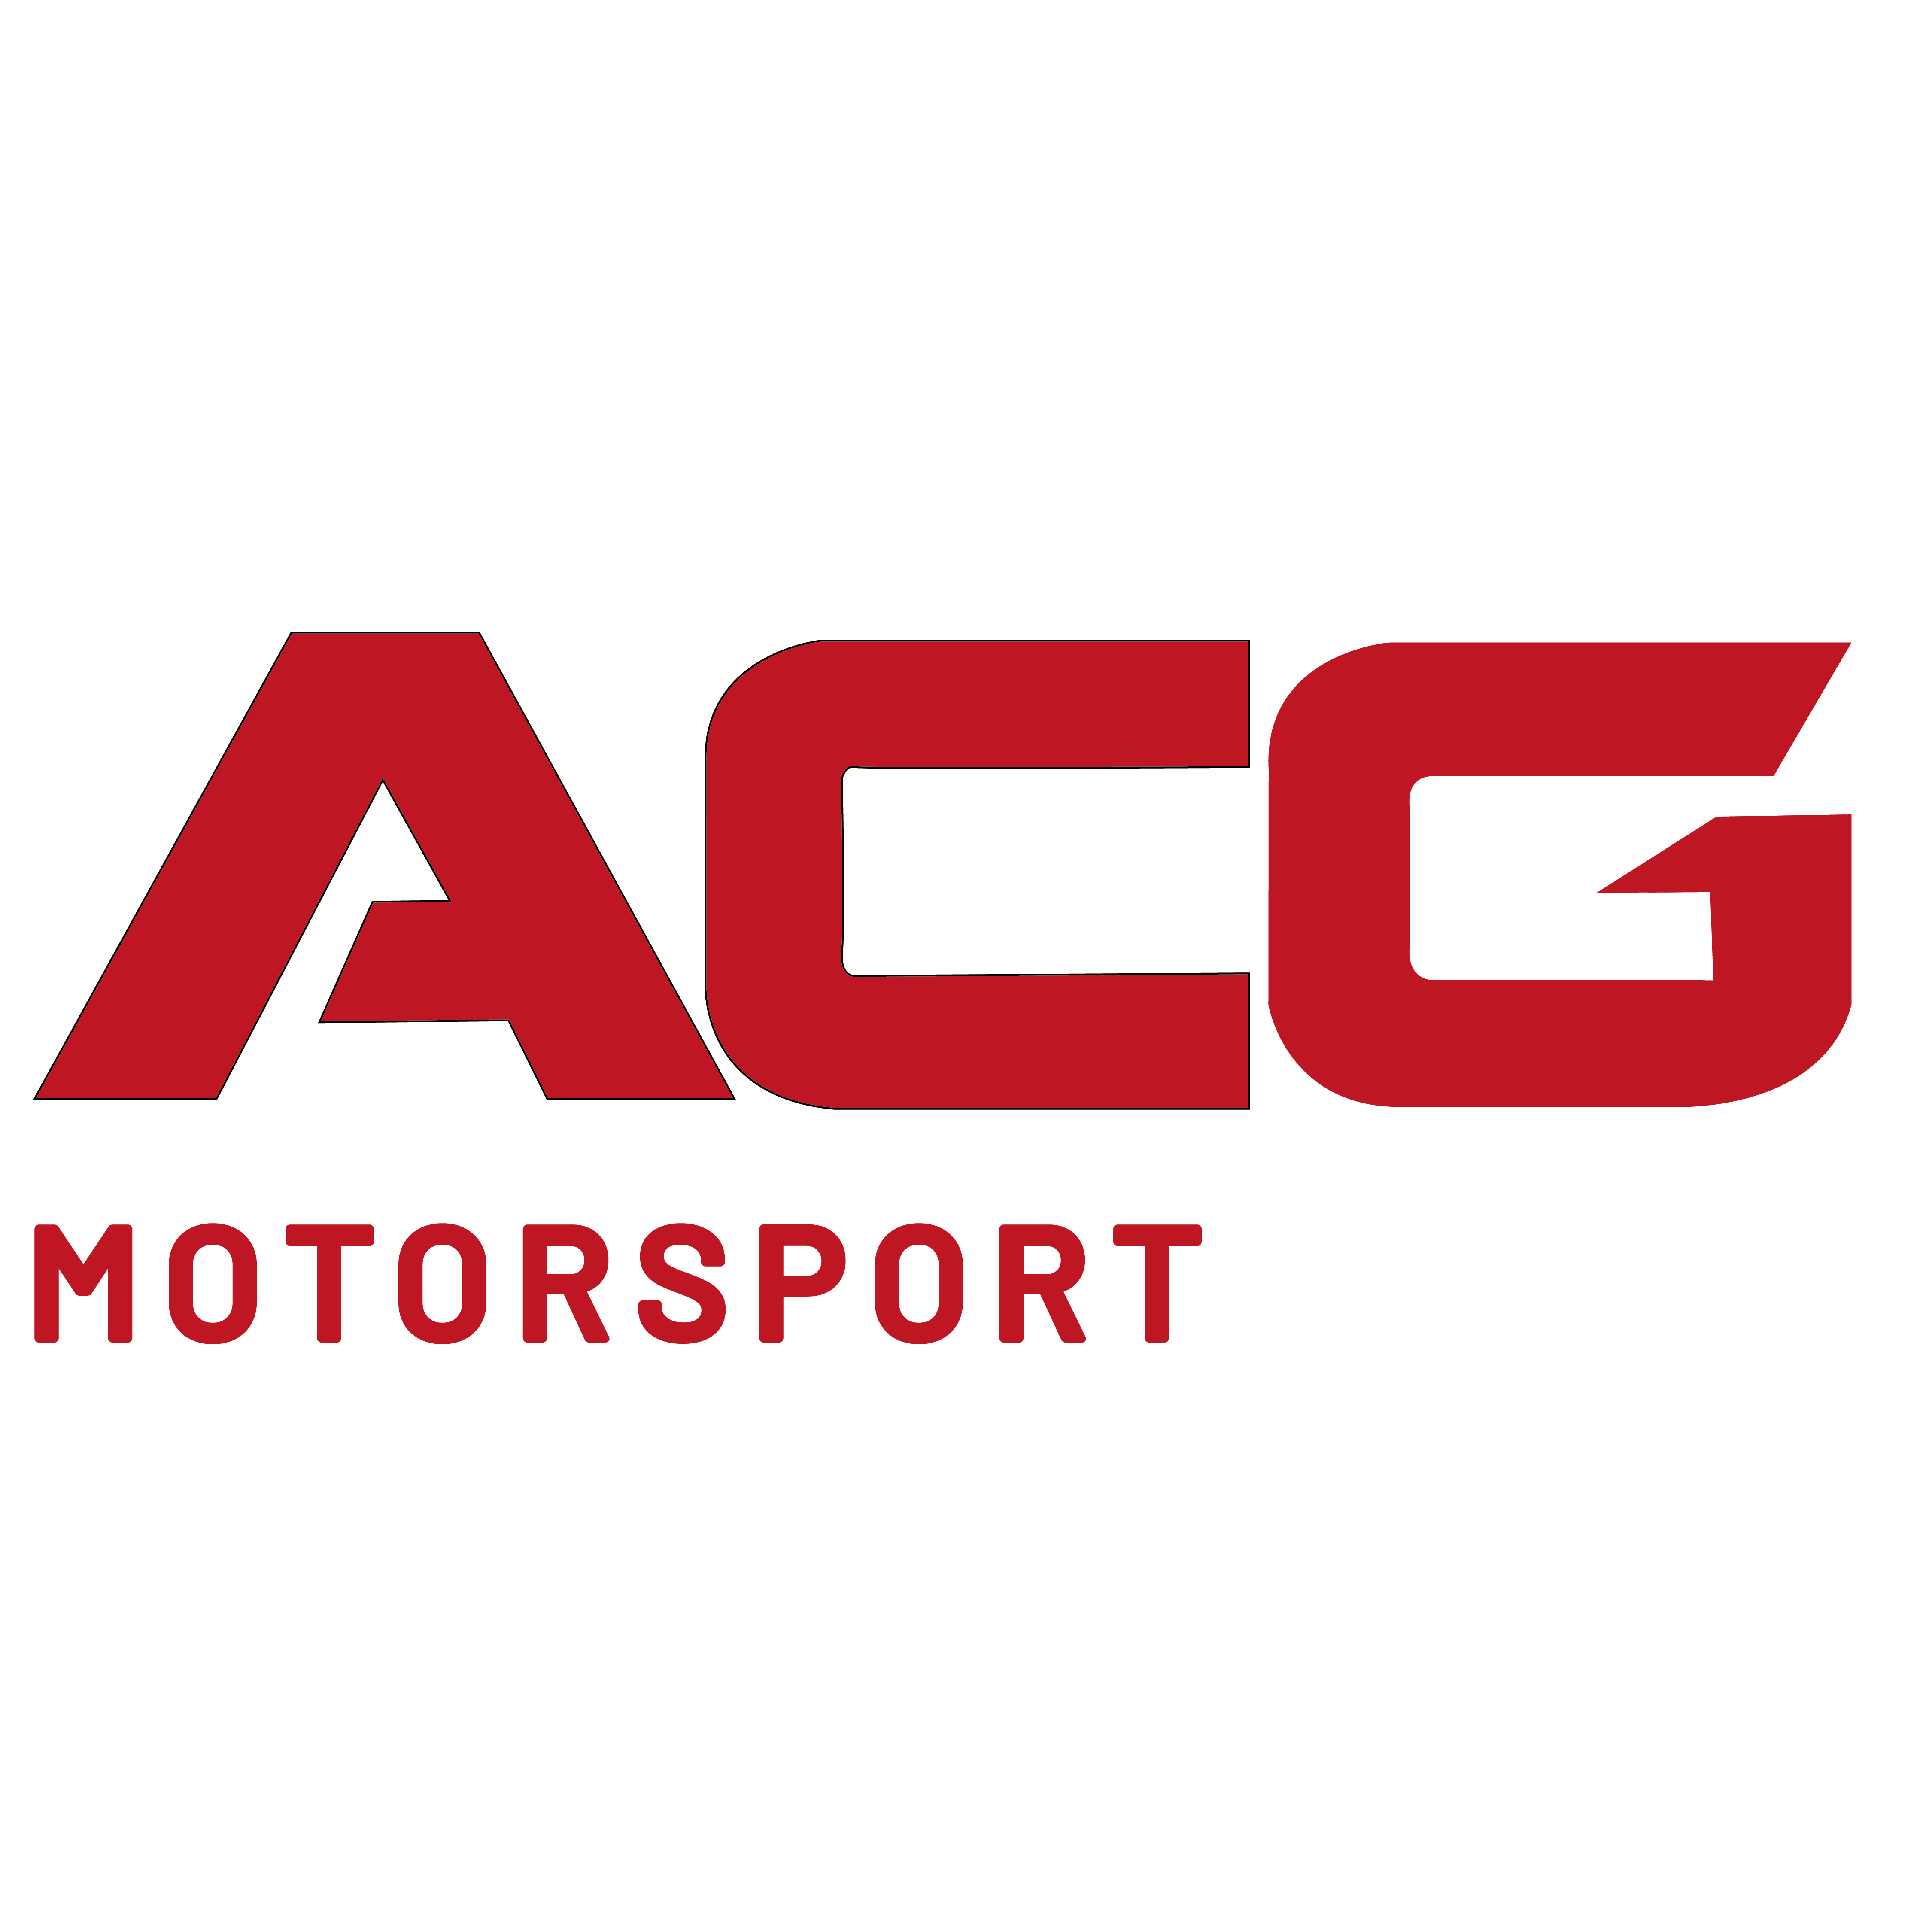 ACG MotorSport